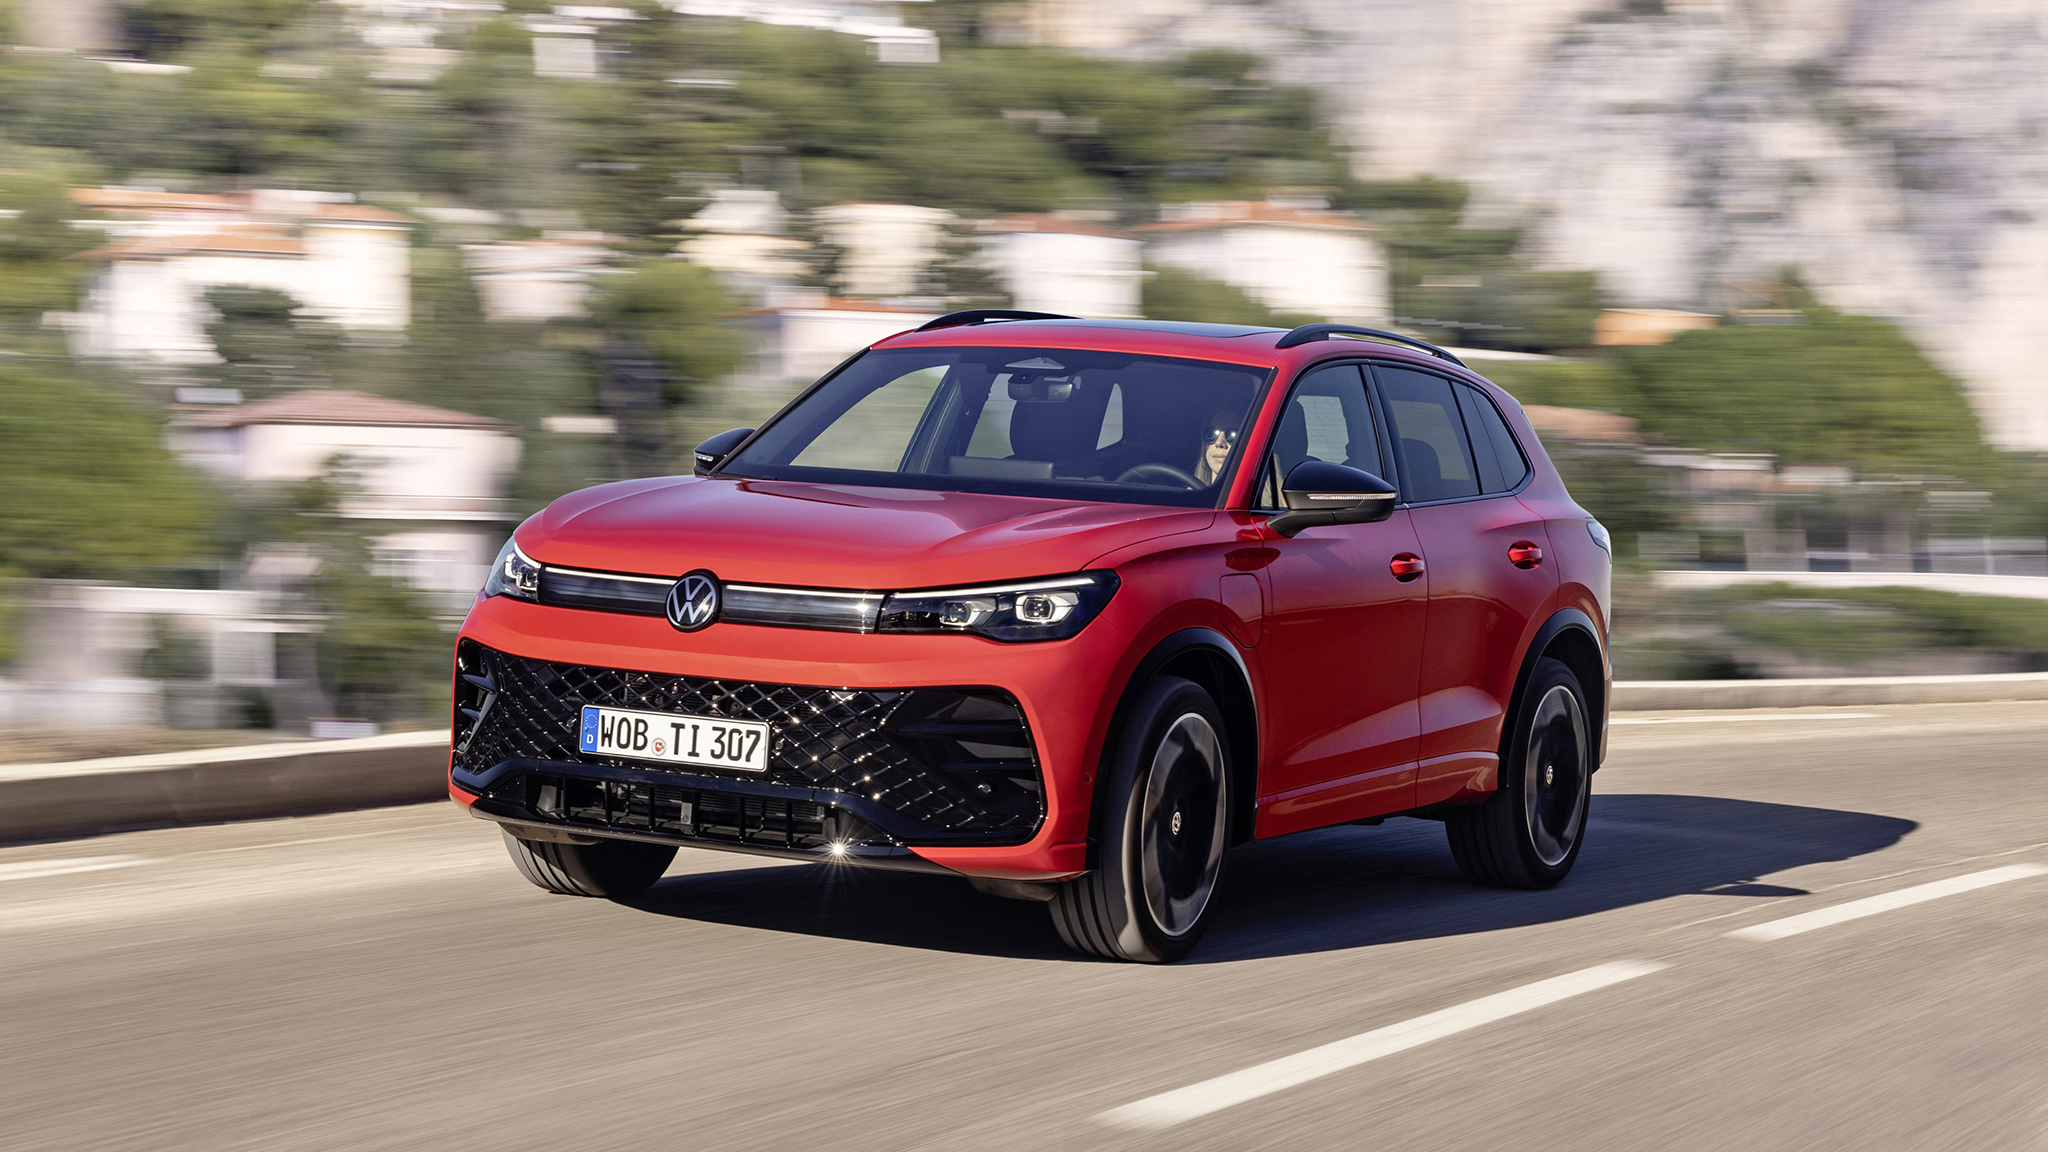 VW Tiguan: Praktischer SUV jetzt mit 14 Prozent Rabatt